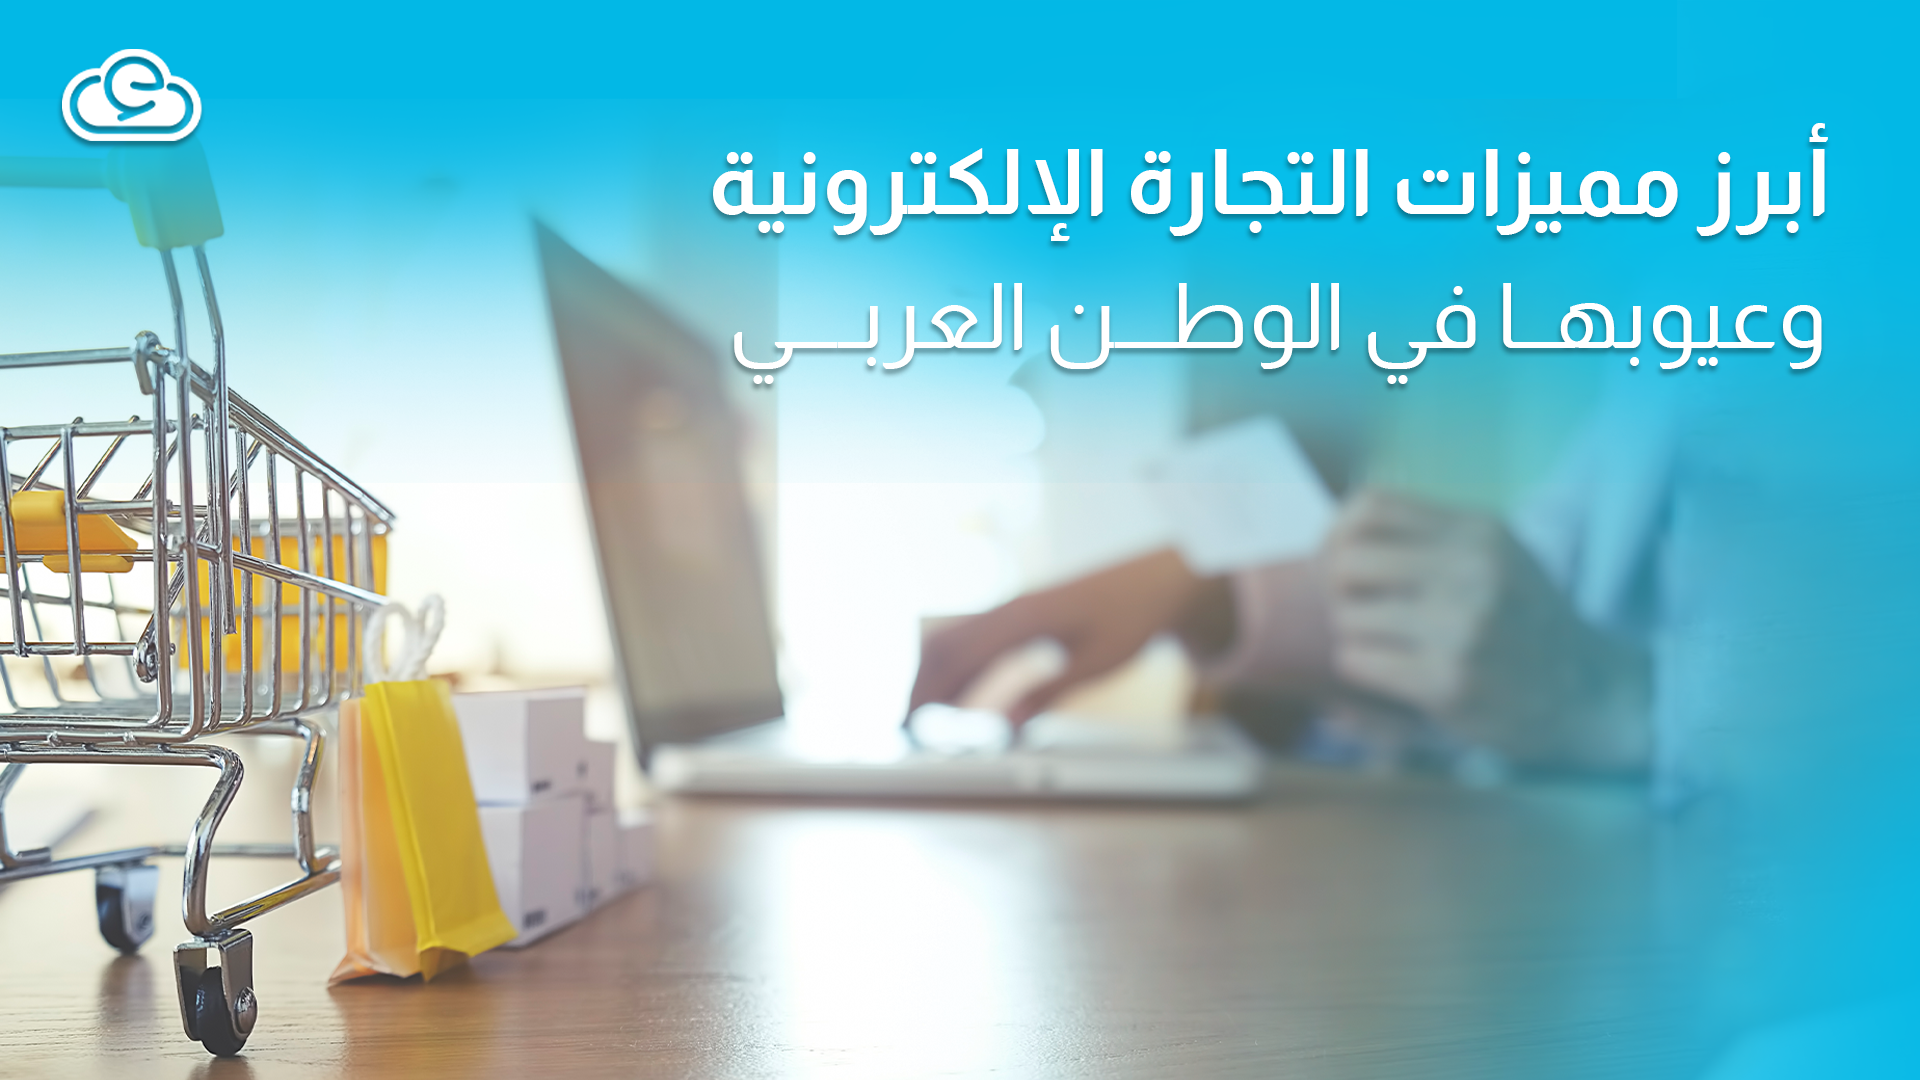 مميزات التجارة الإلكترونية وعيوبها في الوطن العربي